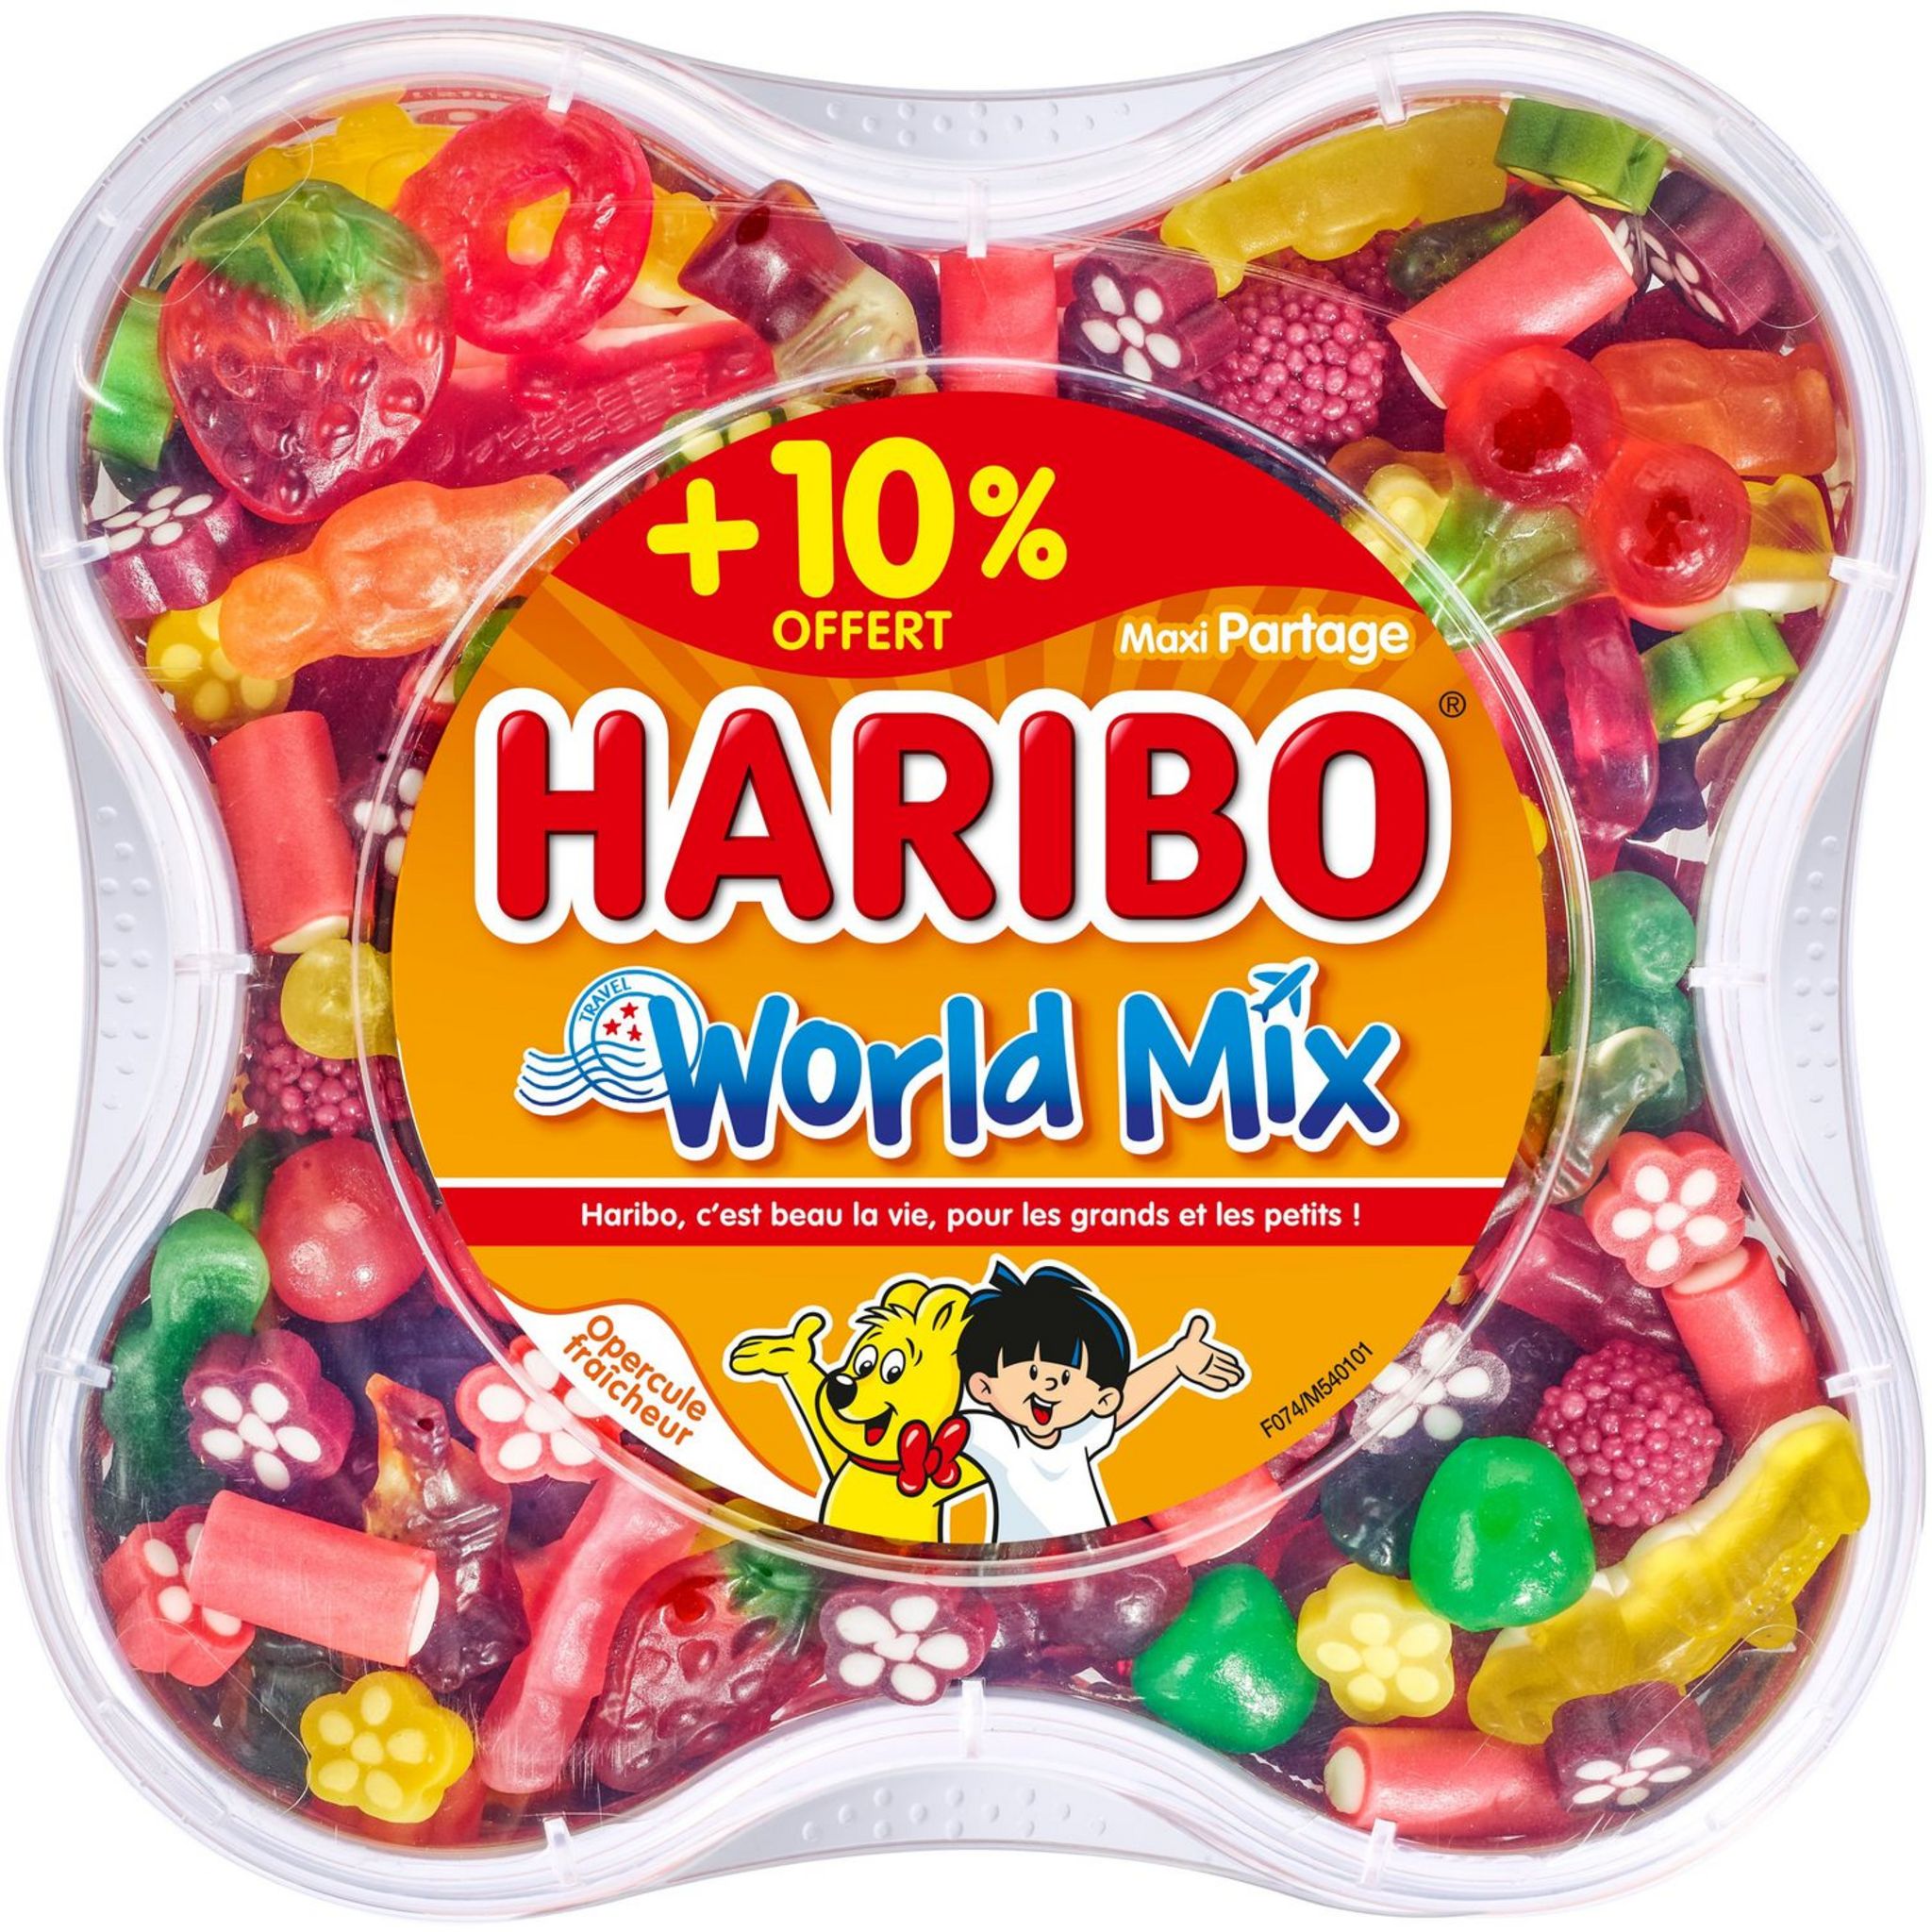 HARIBO Haribo world mix 900g +10% offert pas cher 